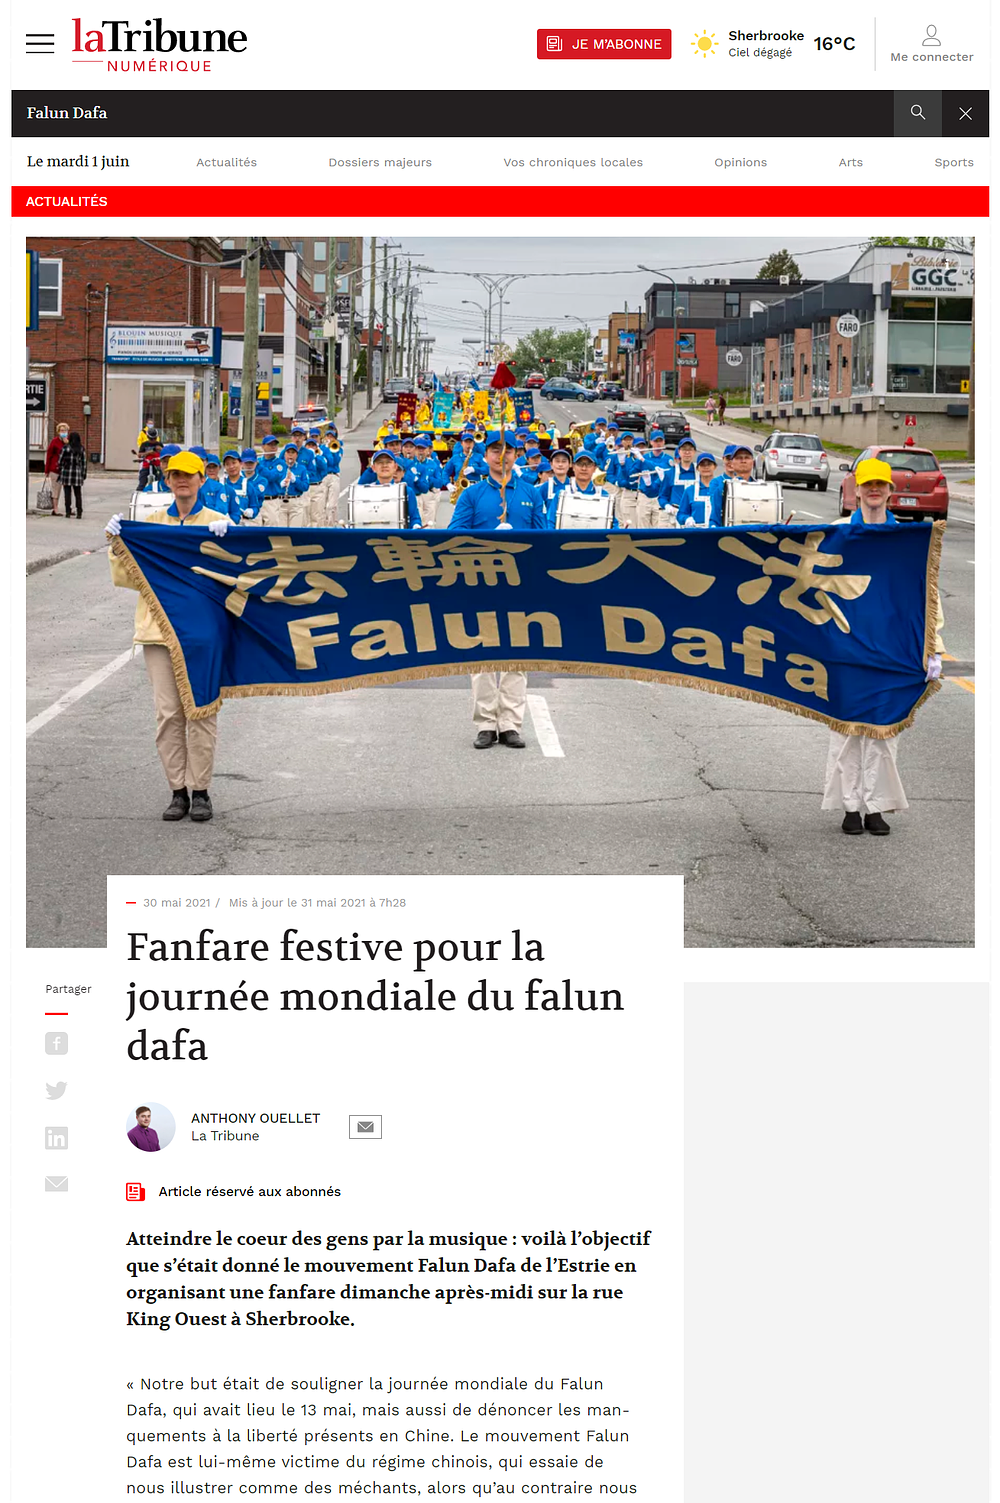 Lokalni mediji iz Sherbrookea, La Tribune, je izvijestio o događaju u članku pod naslovom „Fanfare festival pour la journalnée mondiale du Falun Dafa“, (Limena glazba za Svjetski Dan Falun Dafa).
 